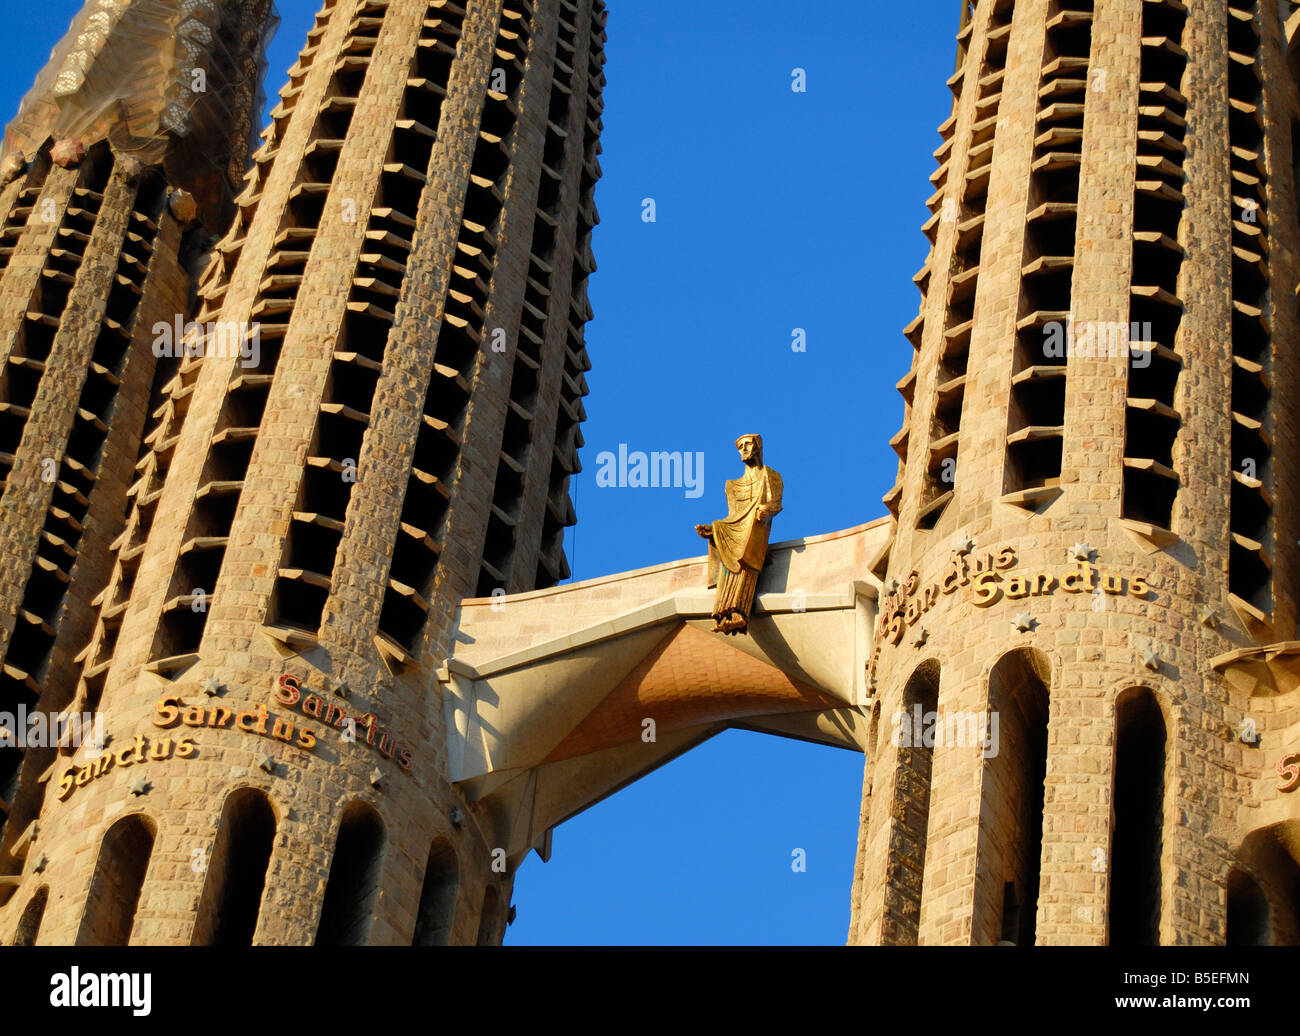 Statue de Jésus Christ ressuscité, La Sagrada Familia (Temple expiatoire de la Sainte Famille) à Barcelone, Catalogne, Espagne Banque D'Images